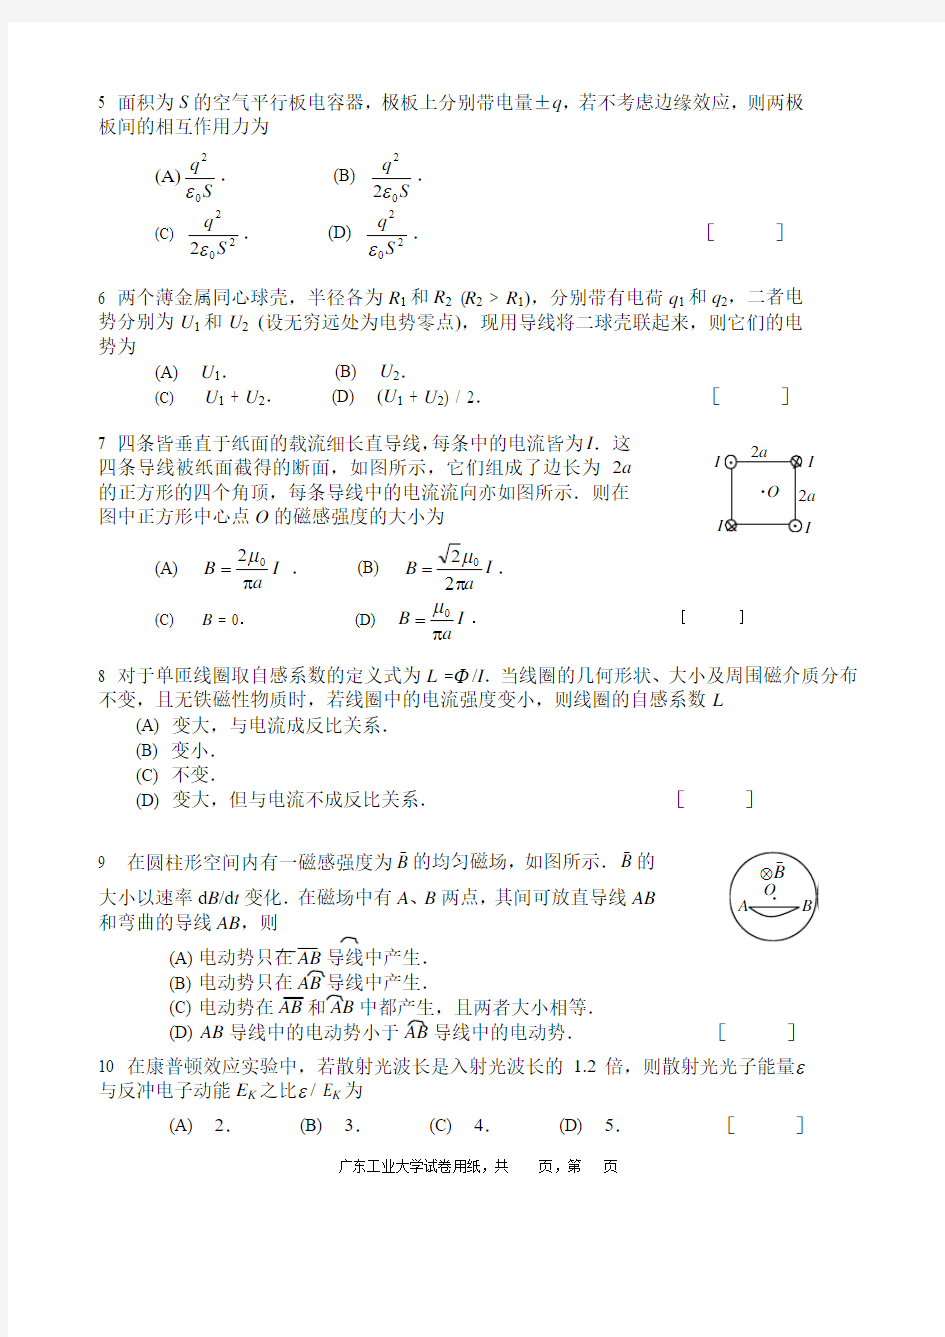 广东工业大学物理2考试试题考试试卷